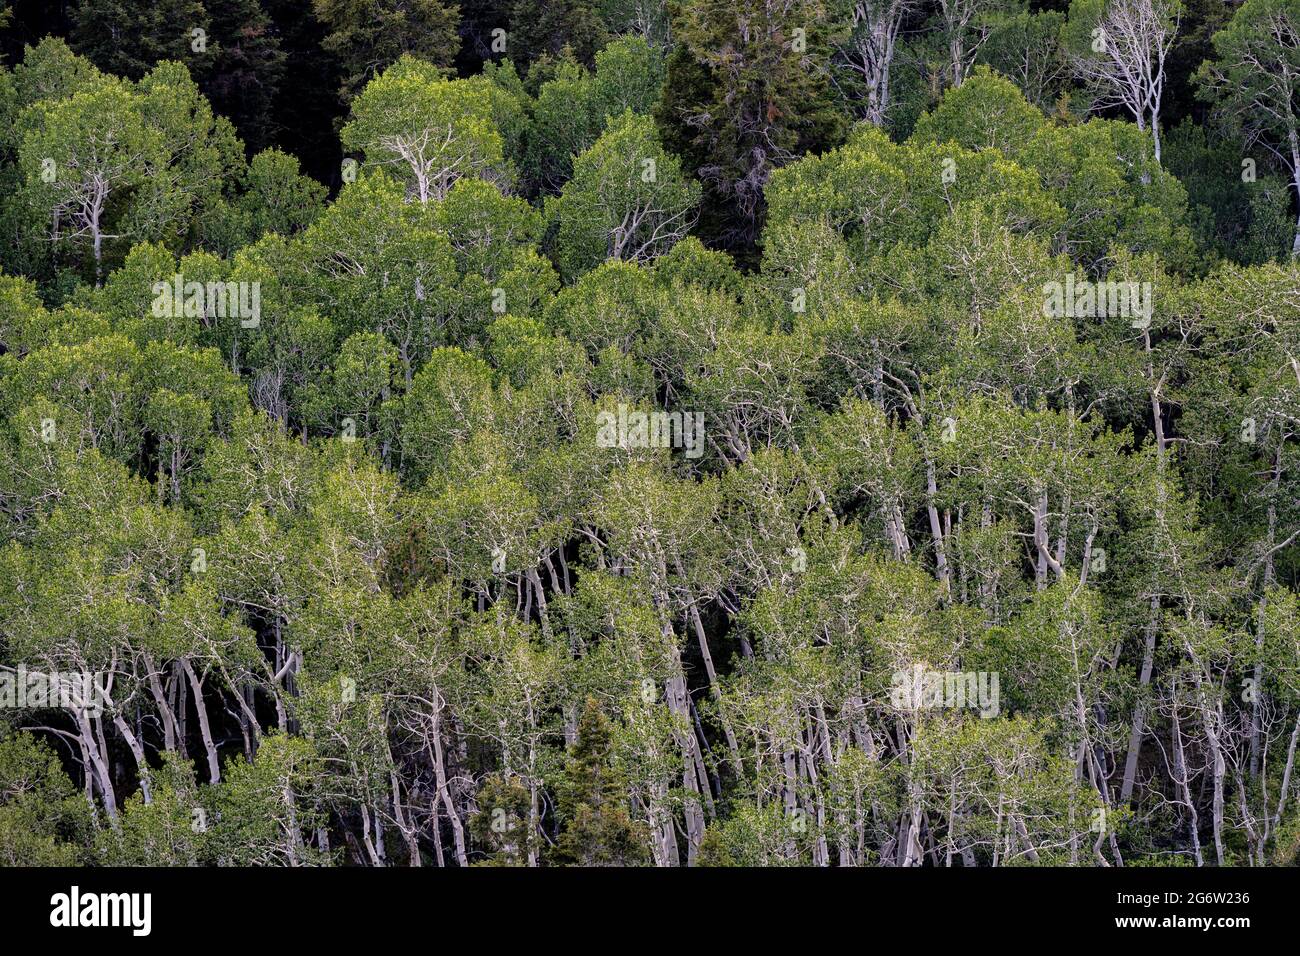 Les Aspens en agitant dans le parc national de Great Basin s'étendent à travers l'image Banque D'Images